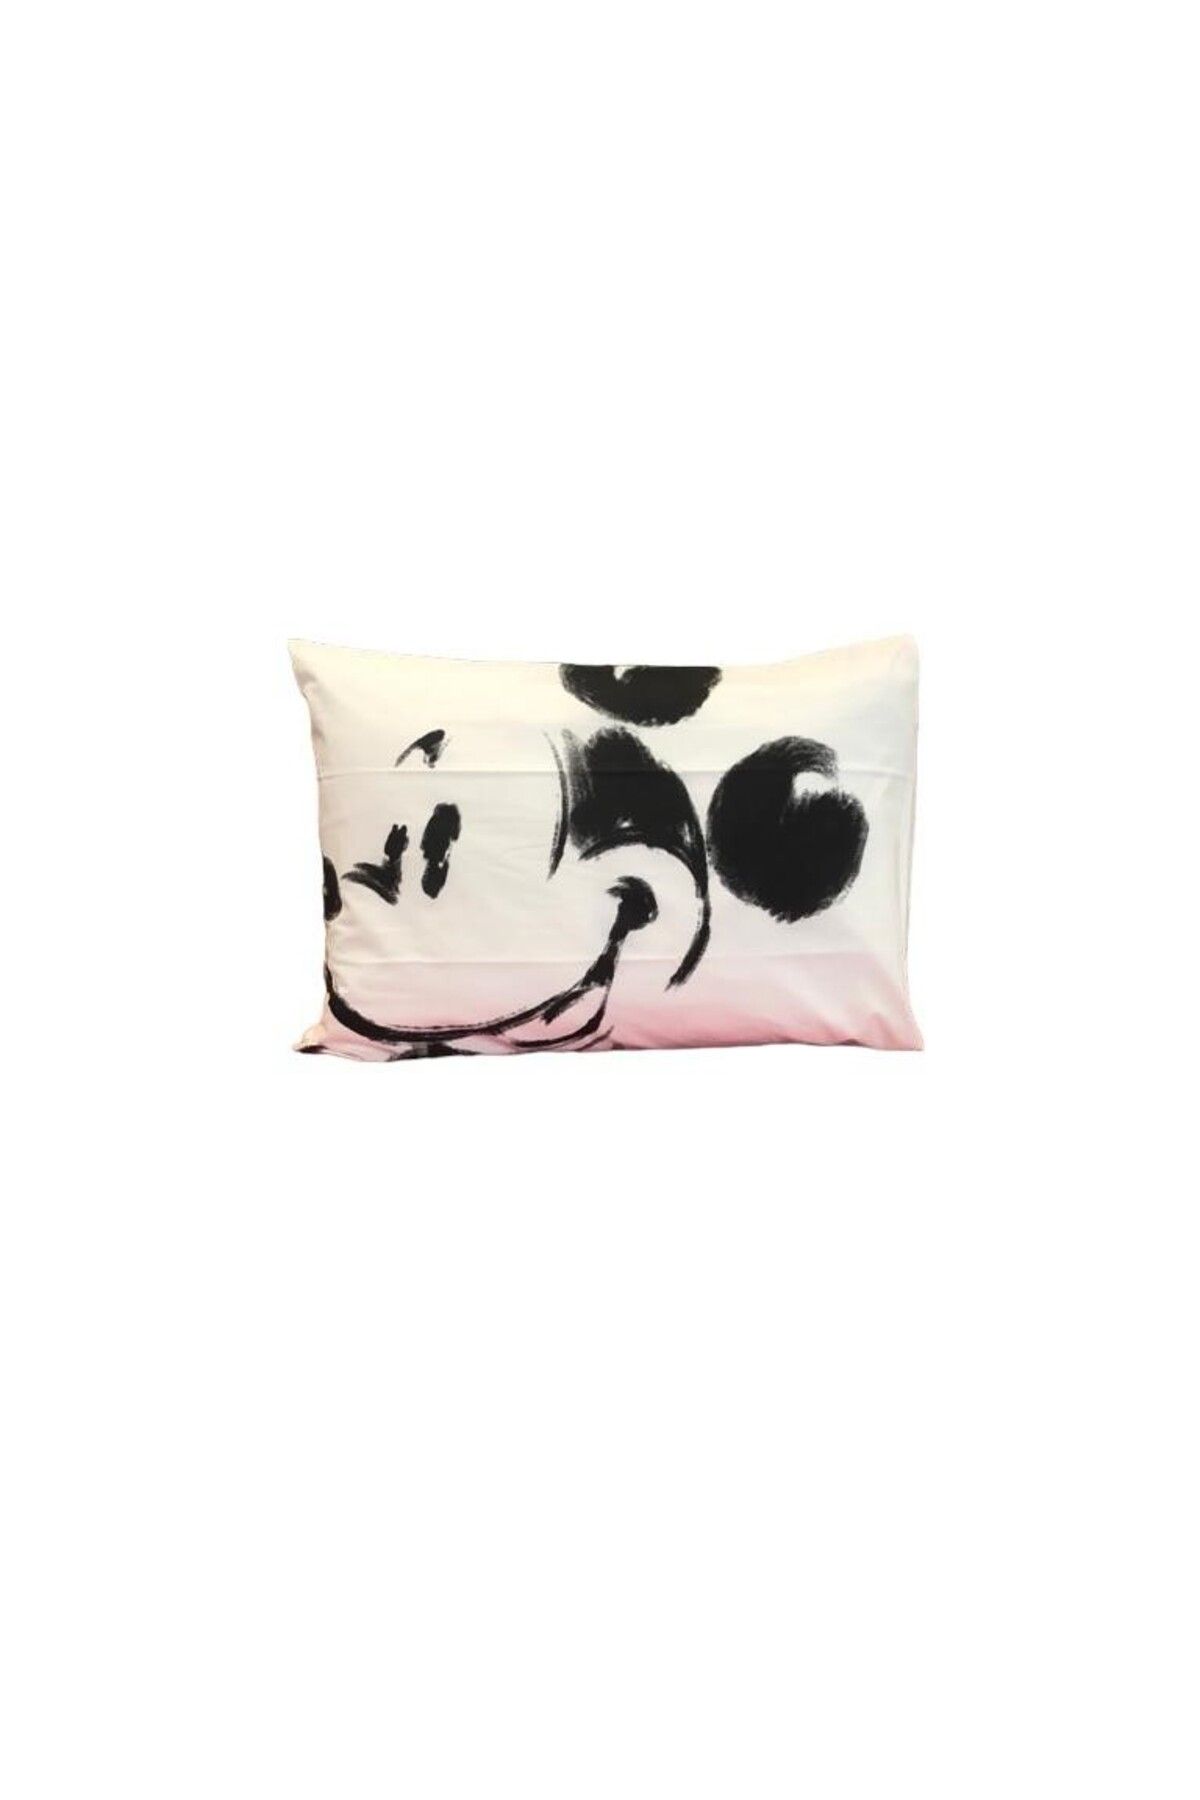 Taç Outlet Disney Mickey Mouse Pamuk Lisanslı Yastık Kılıfı 1 Adet